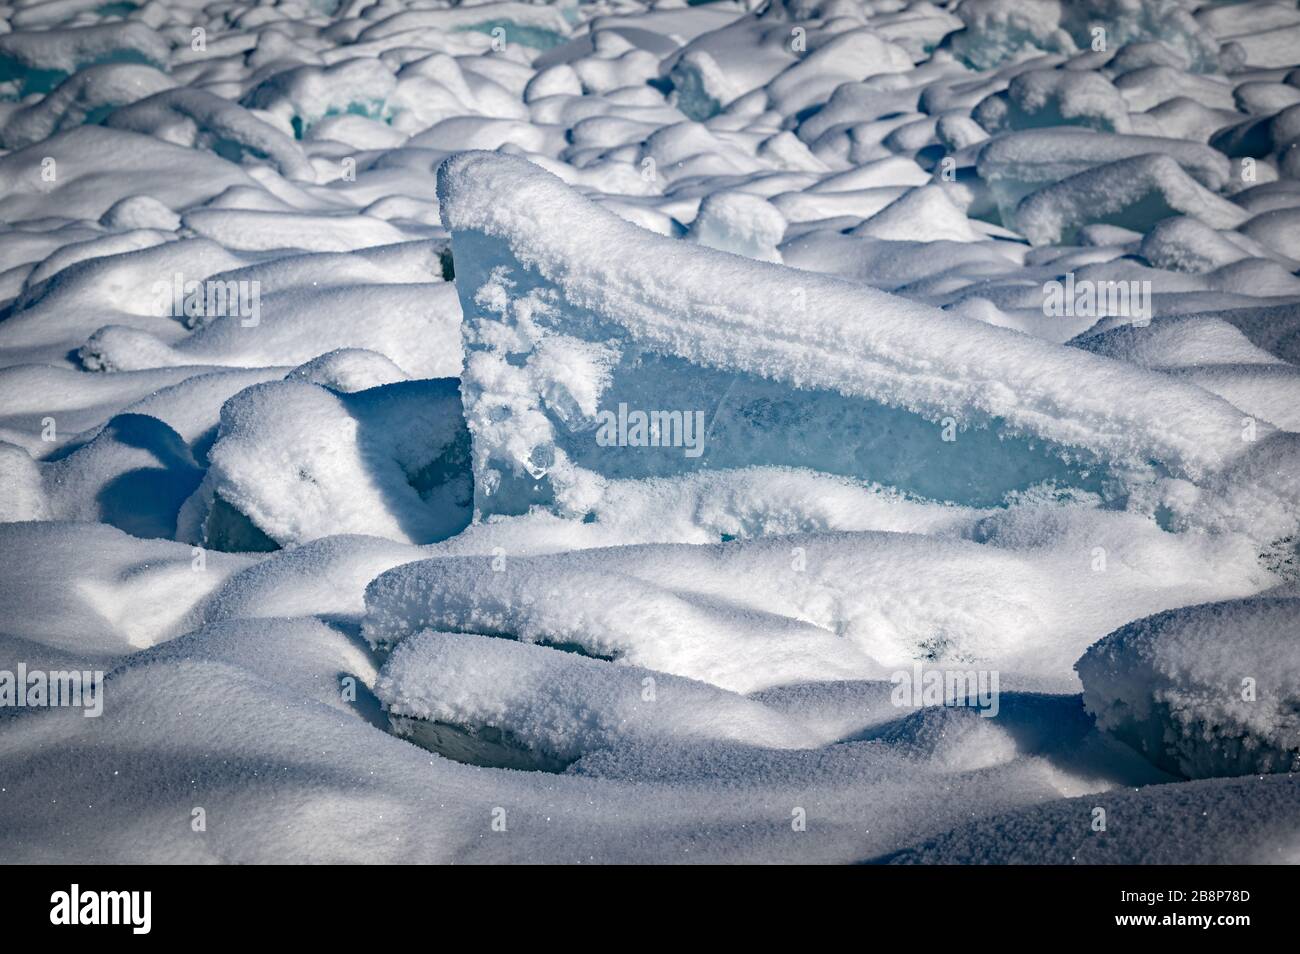 Durchsichtiges blaues Eis schwimmt an einem sonnigen Tag in Eishömmeln gegen einen blauen Himmel. Ungewöhnliche Winterlandschaft des zugefrorenen Baikalsee. Natürliche Kälte B. Stockfoto